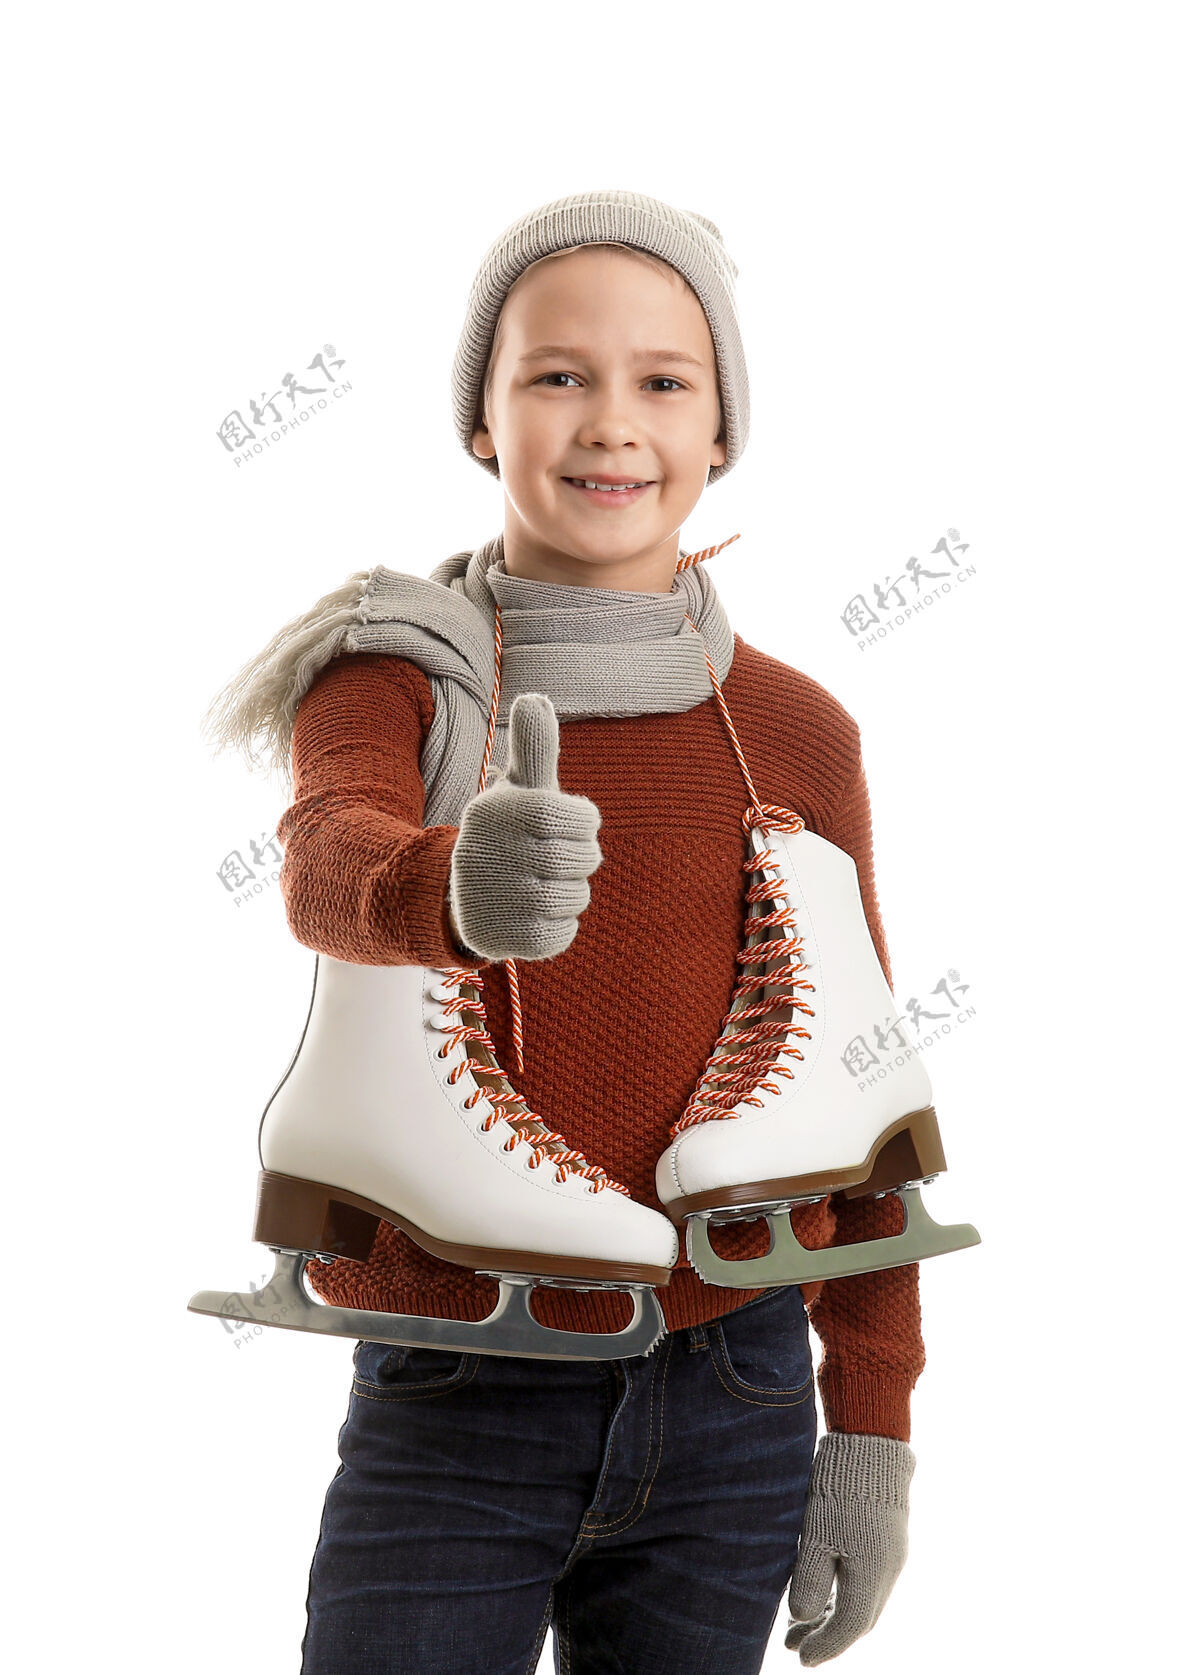 衣服可爱的小男孩 穿着溜冰鞋 大拇指朝上抵着白色刀片表演温暖